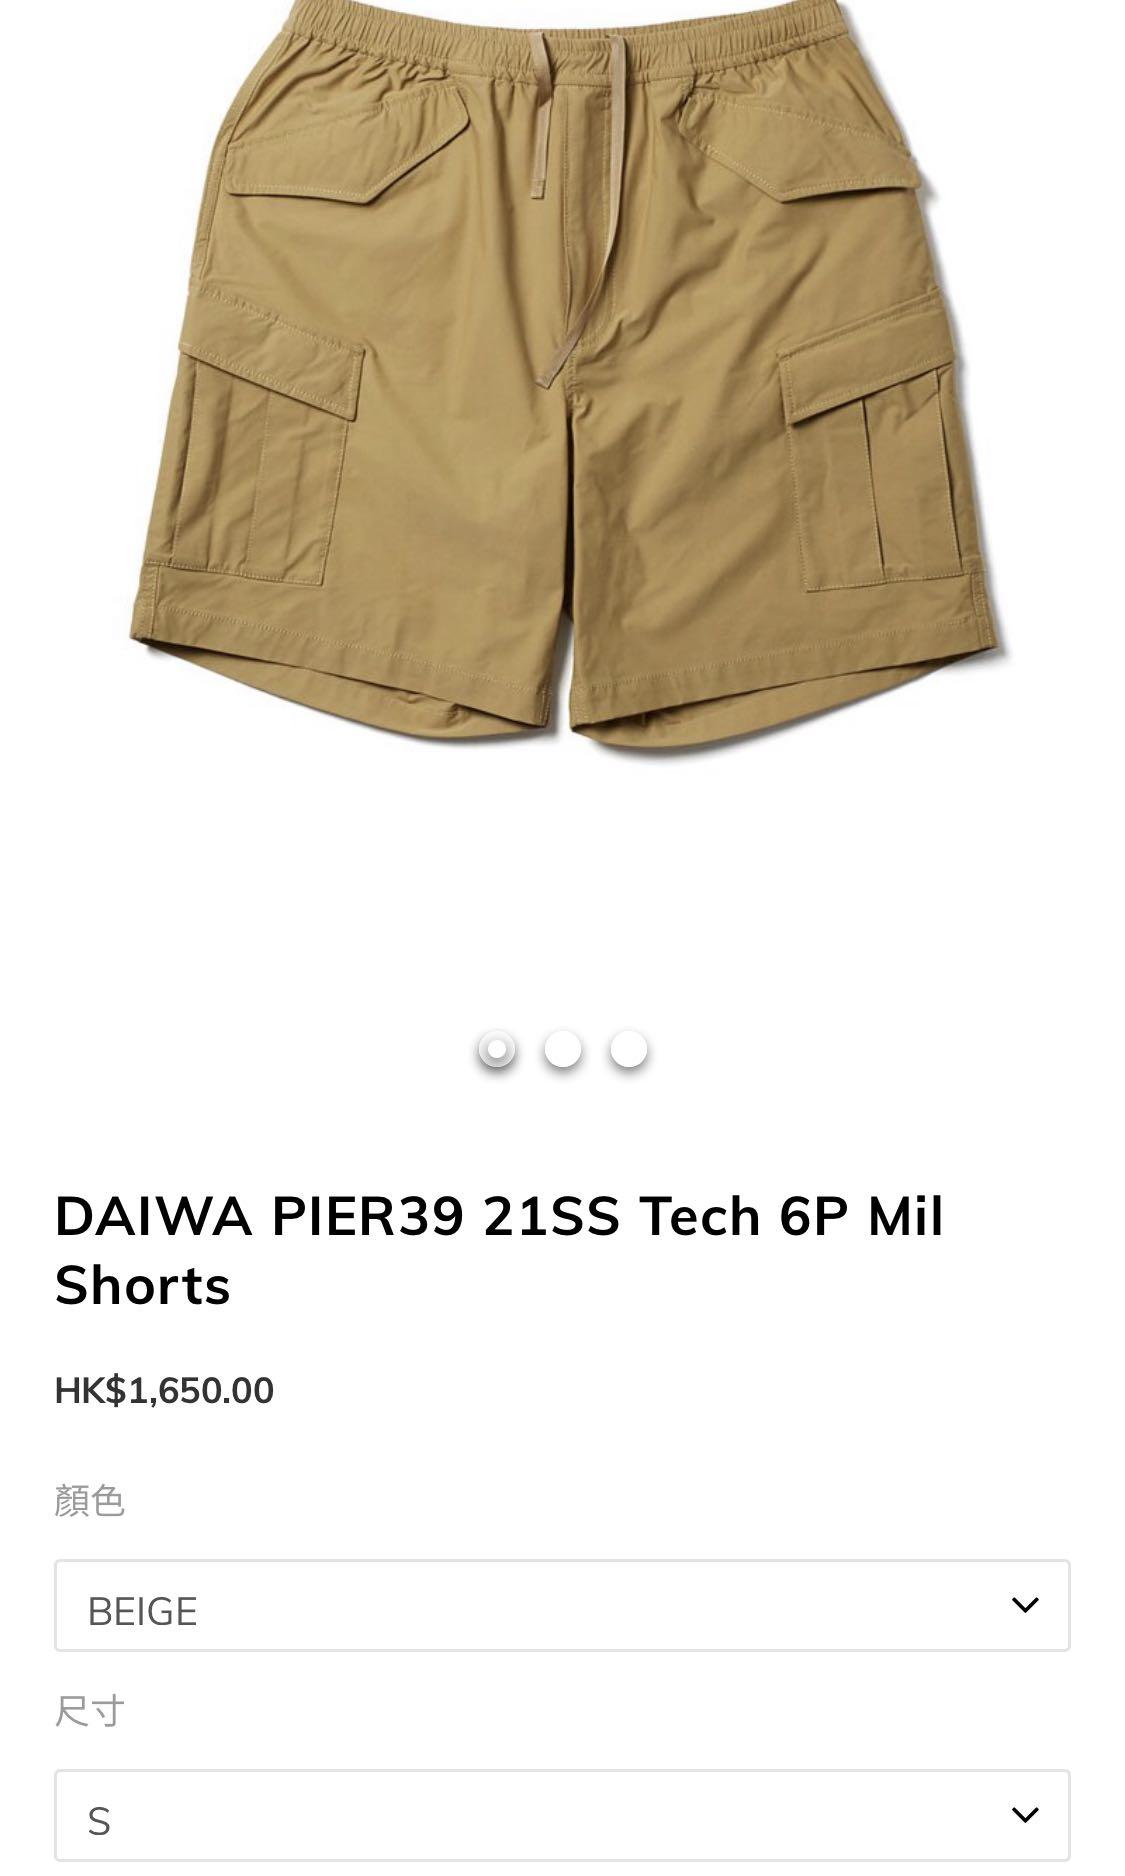 M】DAIWA PIER39 Tech 6P Mil Shorts BEIGE-